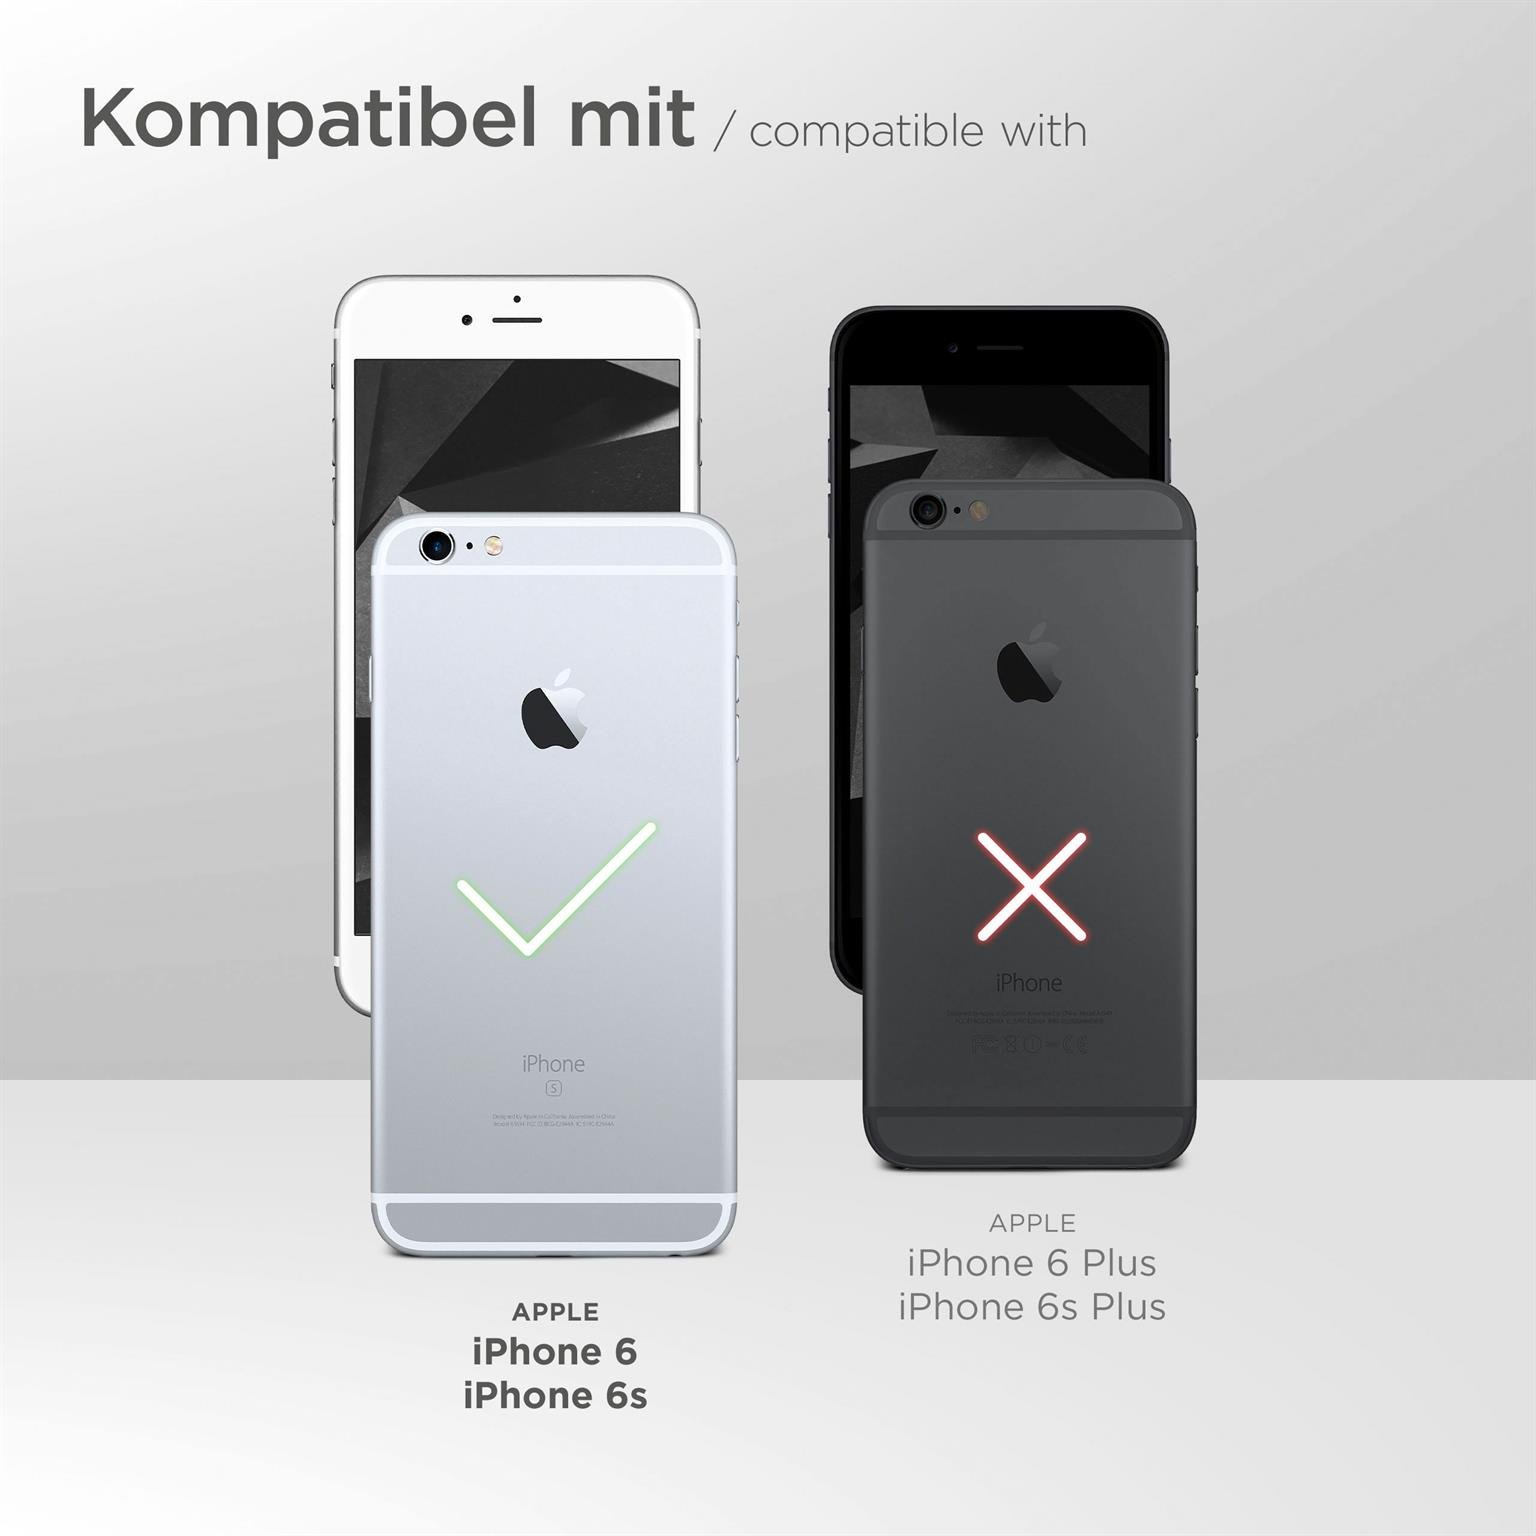 moex Aero Case für Apple iPhone 6 – Durchsichtige Hülle aus Silikon, Ultra Slim Handyhülle